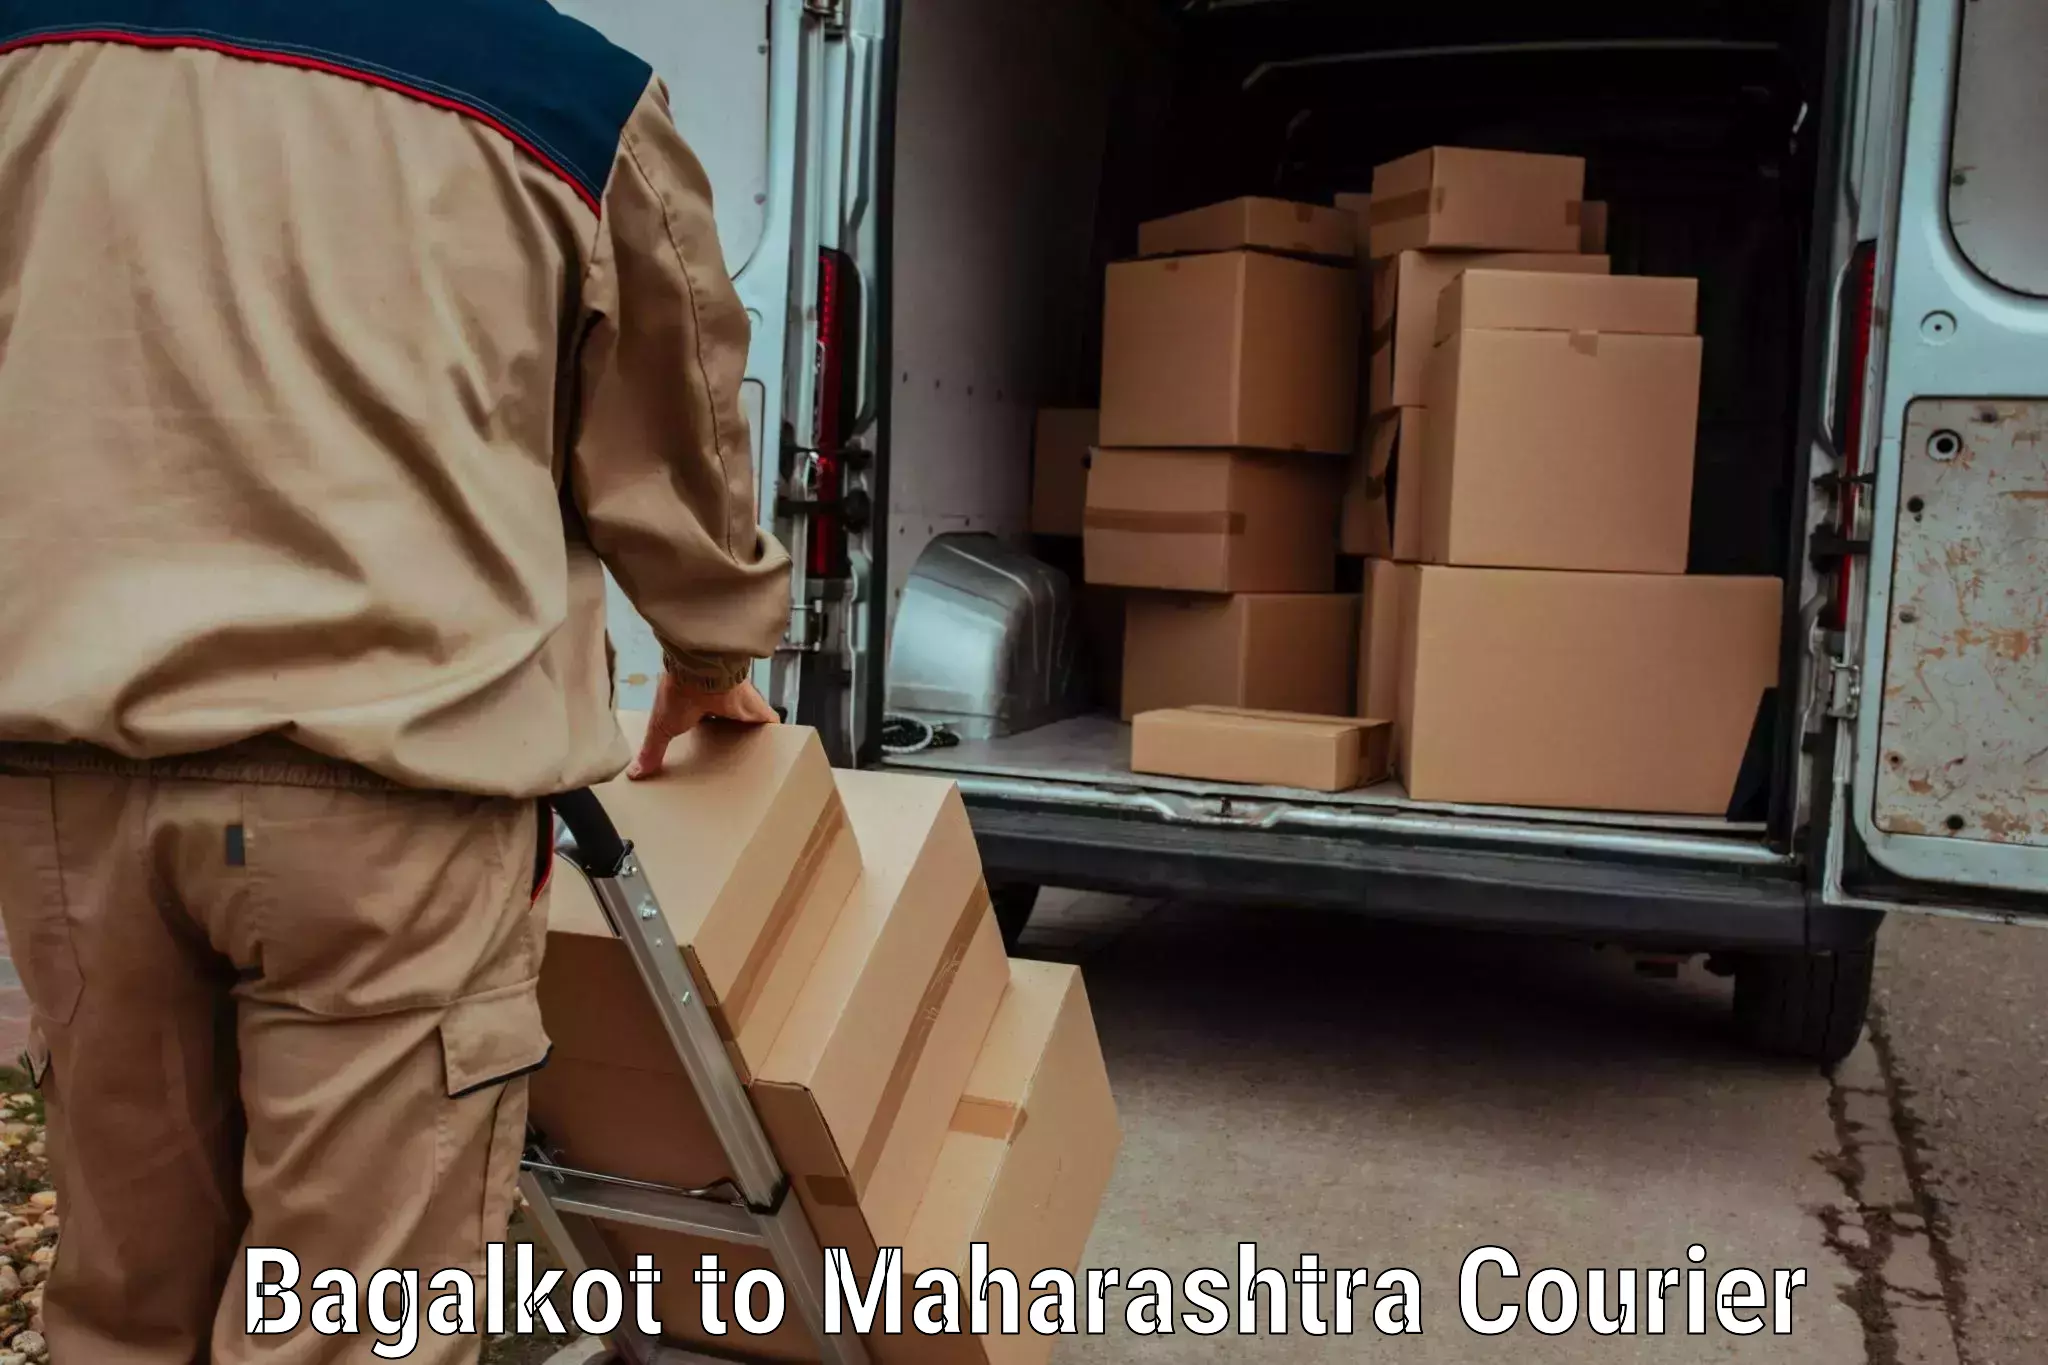 Express postal services Bagalkot to Mahabaleshwar